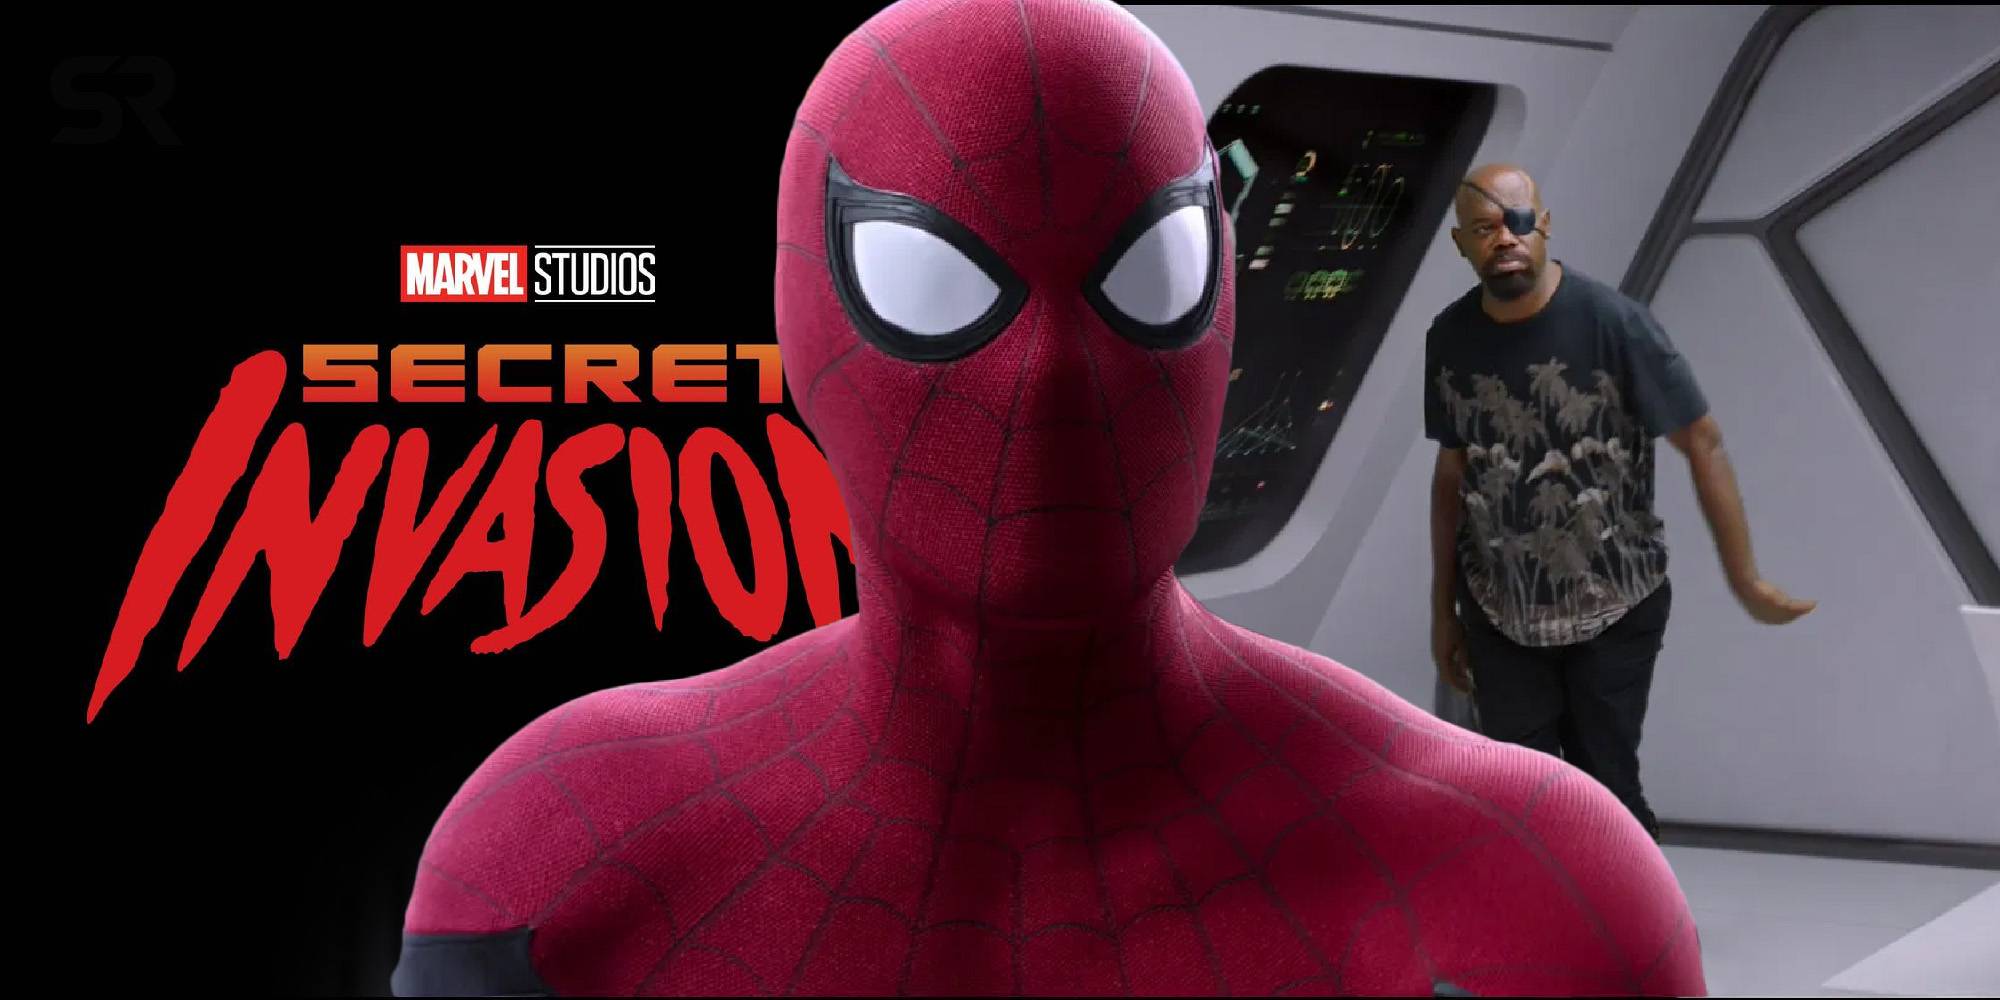 Spider man secret invasion